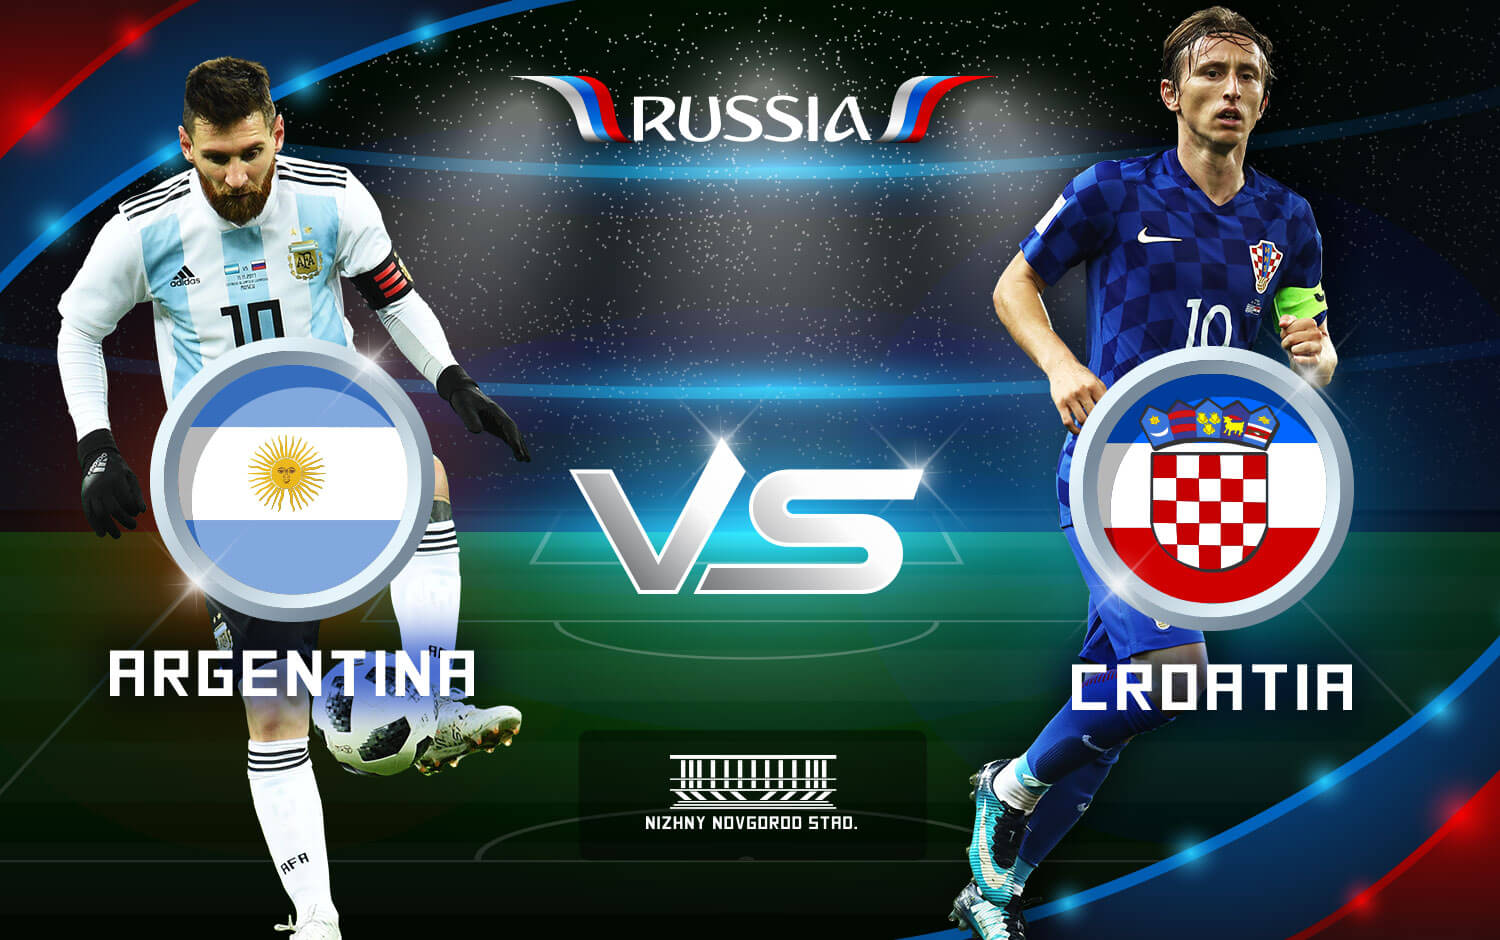 Argentina-vs-croatia